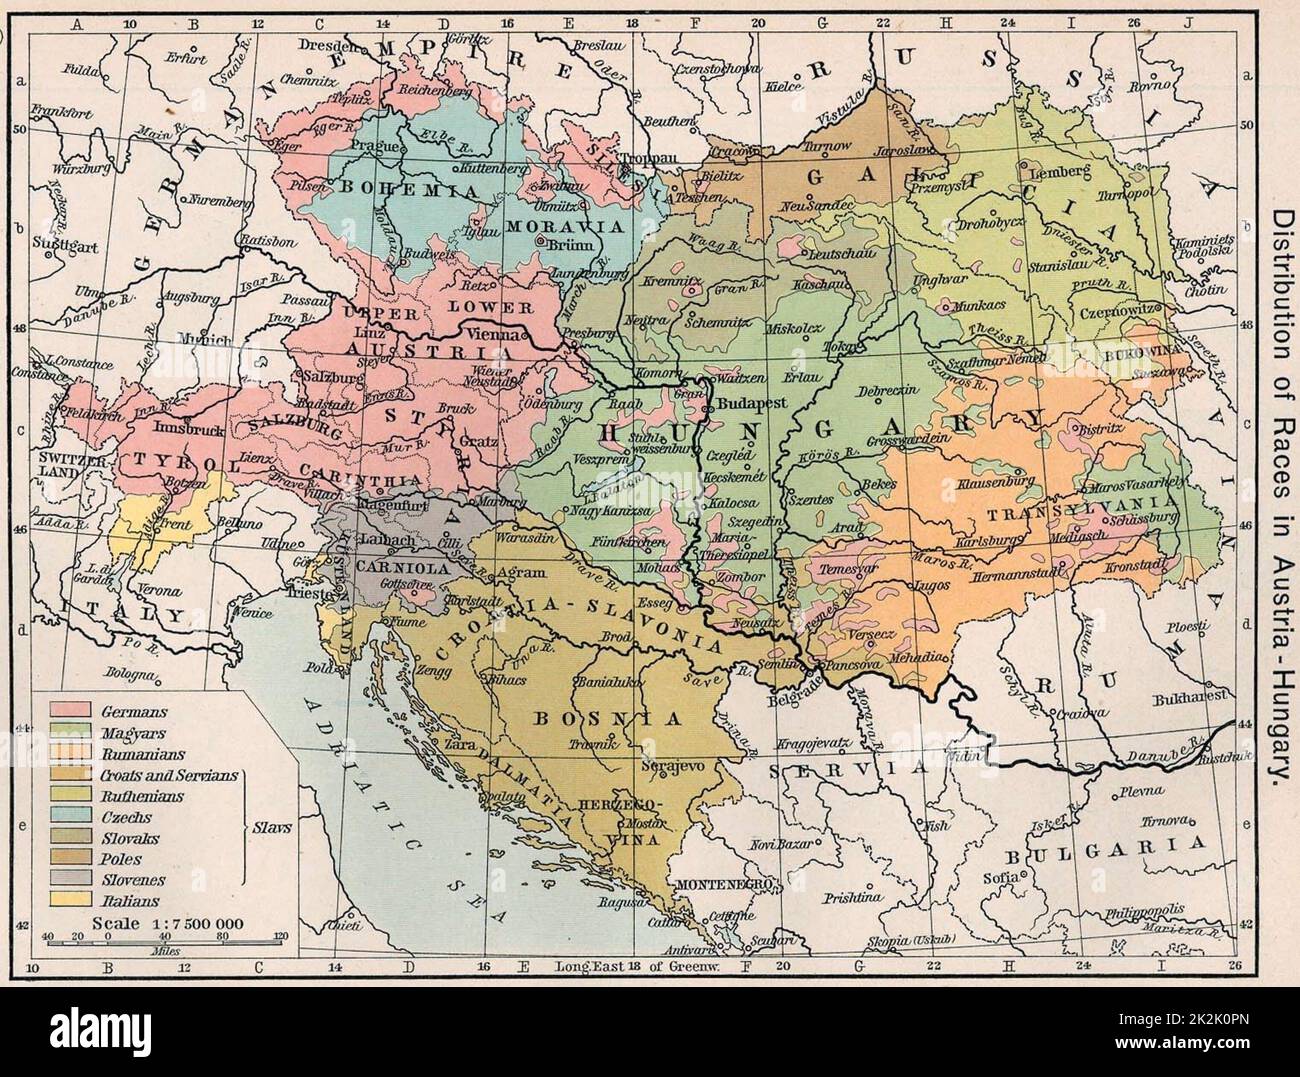 Österreich-Ungarn 1911 "Verteilung der Rassen in Österreich-Ungarn" aus dem historischen Atlas von William R. Shepherd Stockfoto